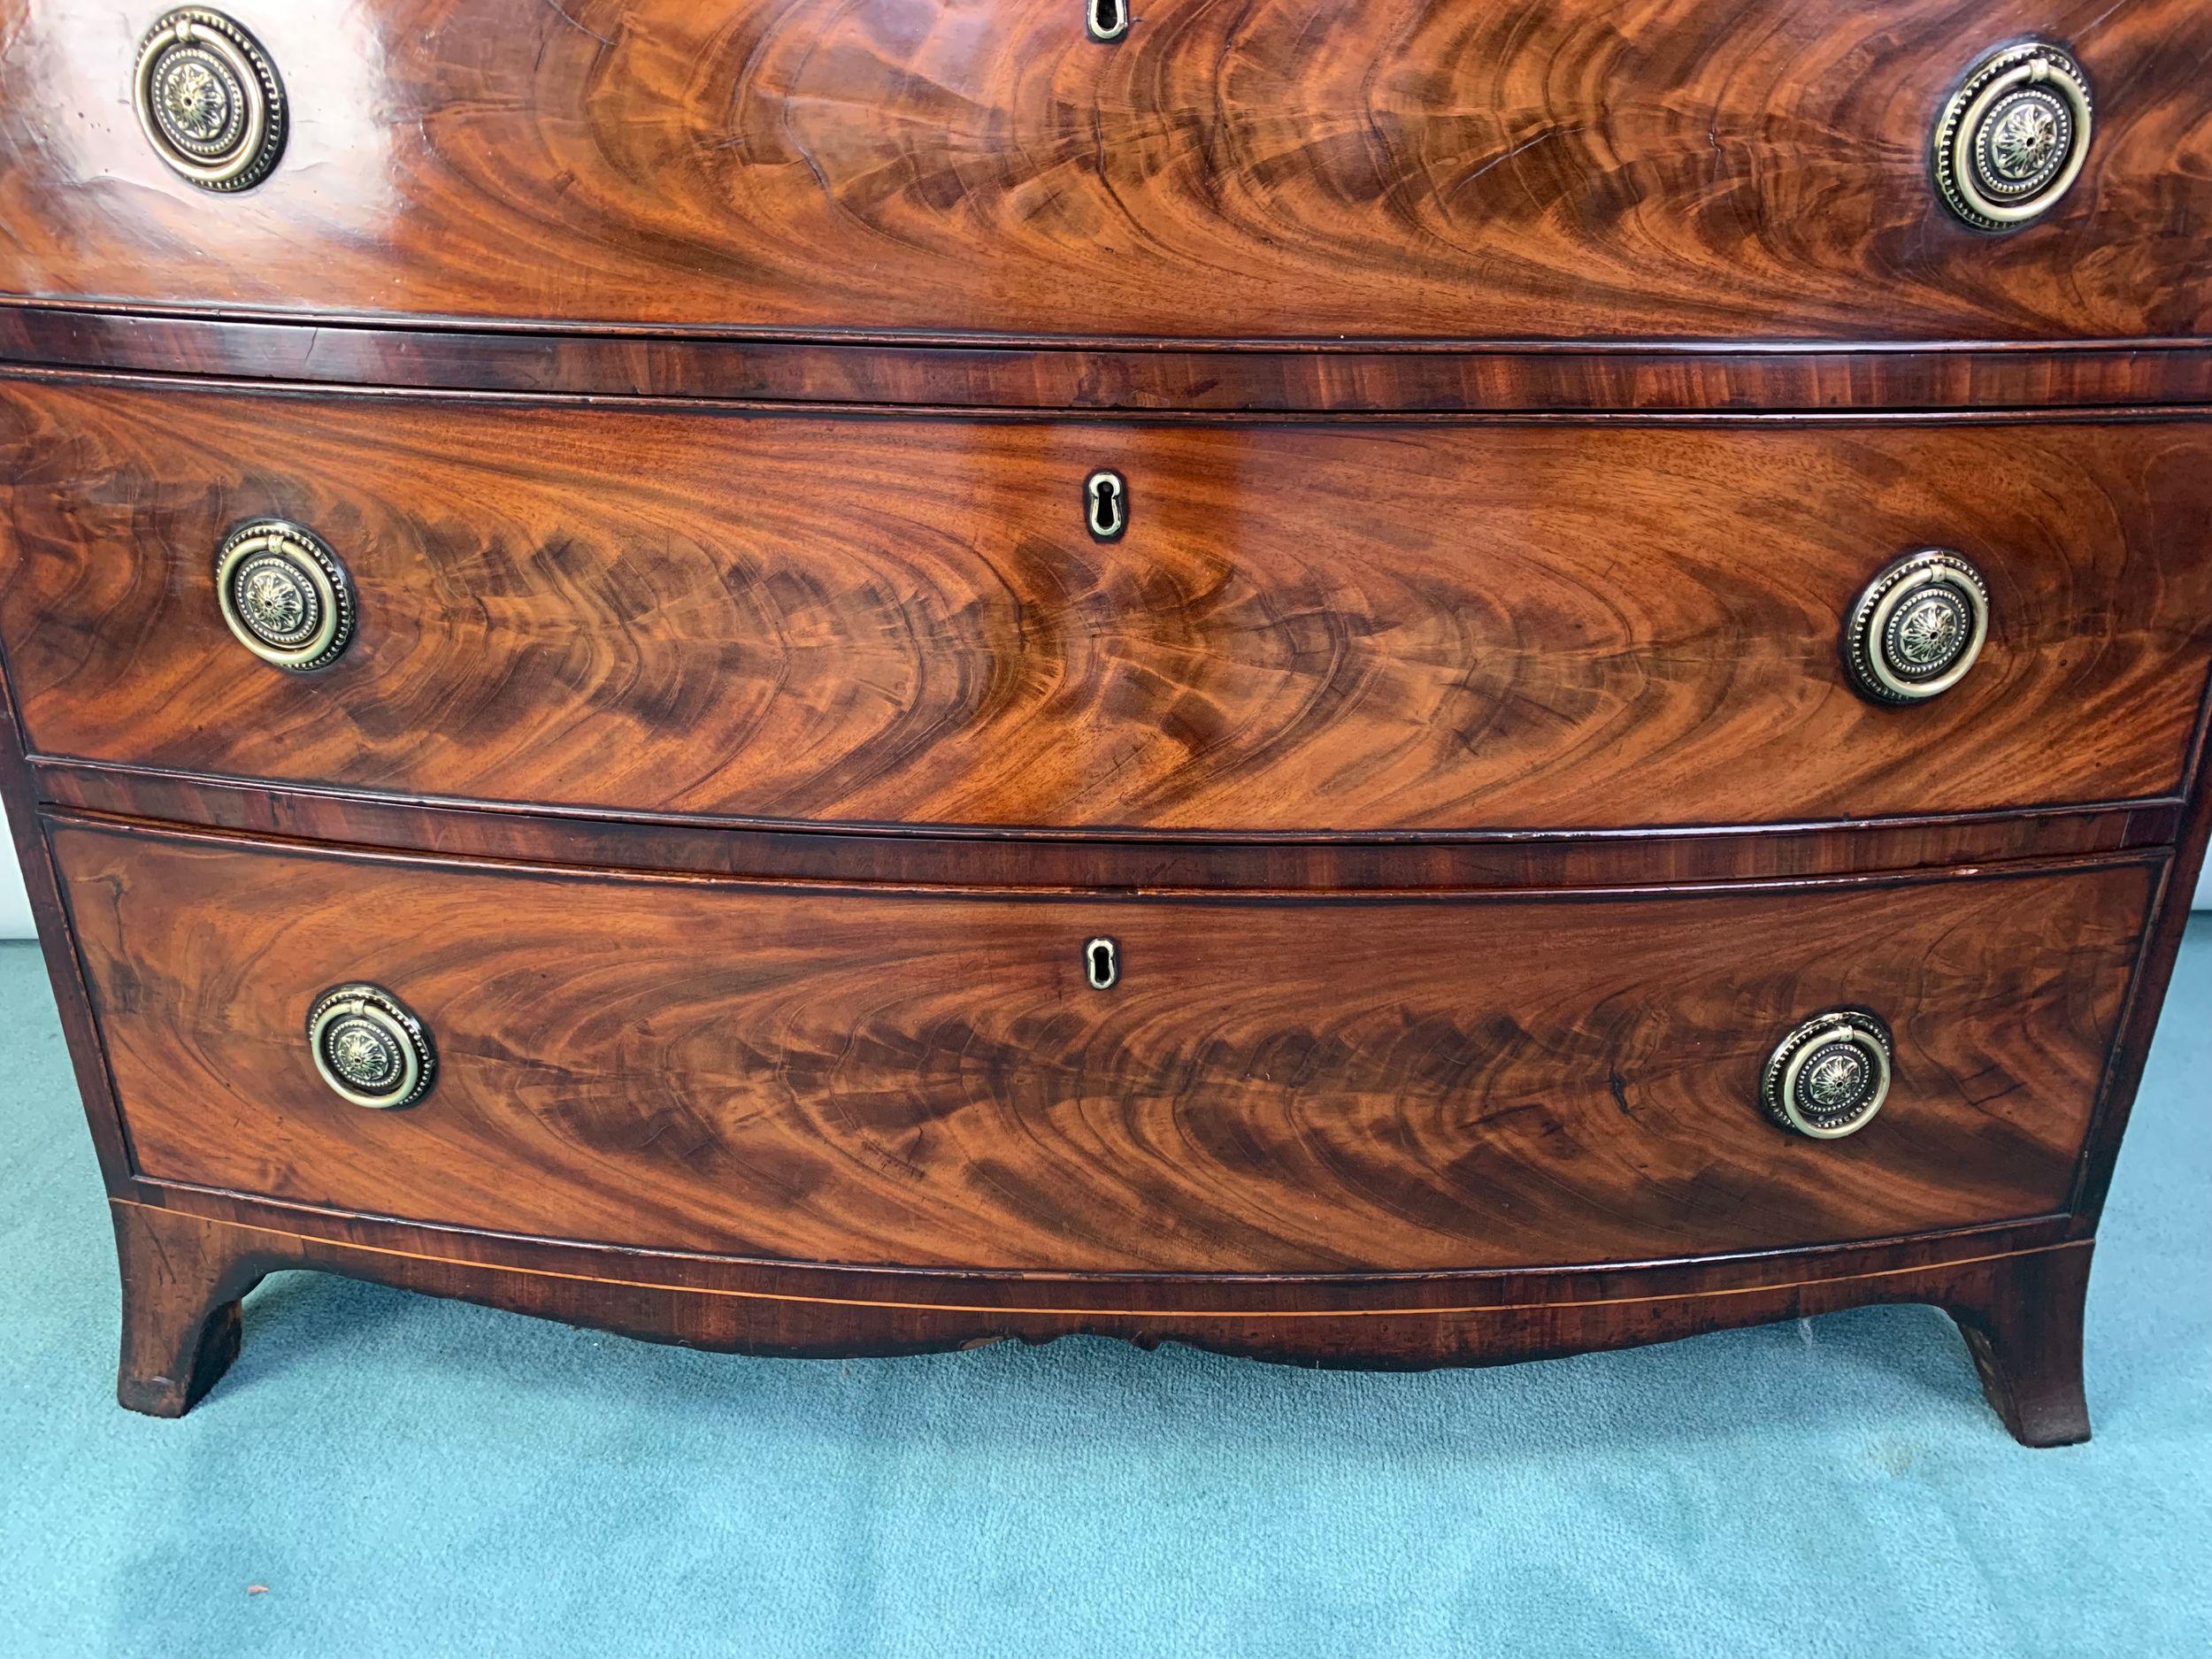 Eine hochwertige, geflammte Mahagonikommode aus der Zeit von Georg III. mit vier abgestuften Schubladen von außergewöhnlicher Farbe und schön gemaserten Oberflächen. Steht auf gespreizten Füßen mit geformter Schürze dazwischen. Die Schubladen sind